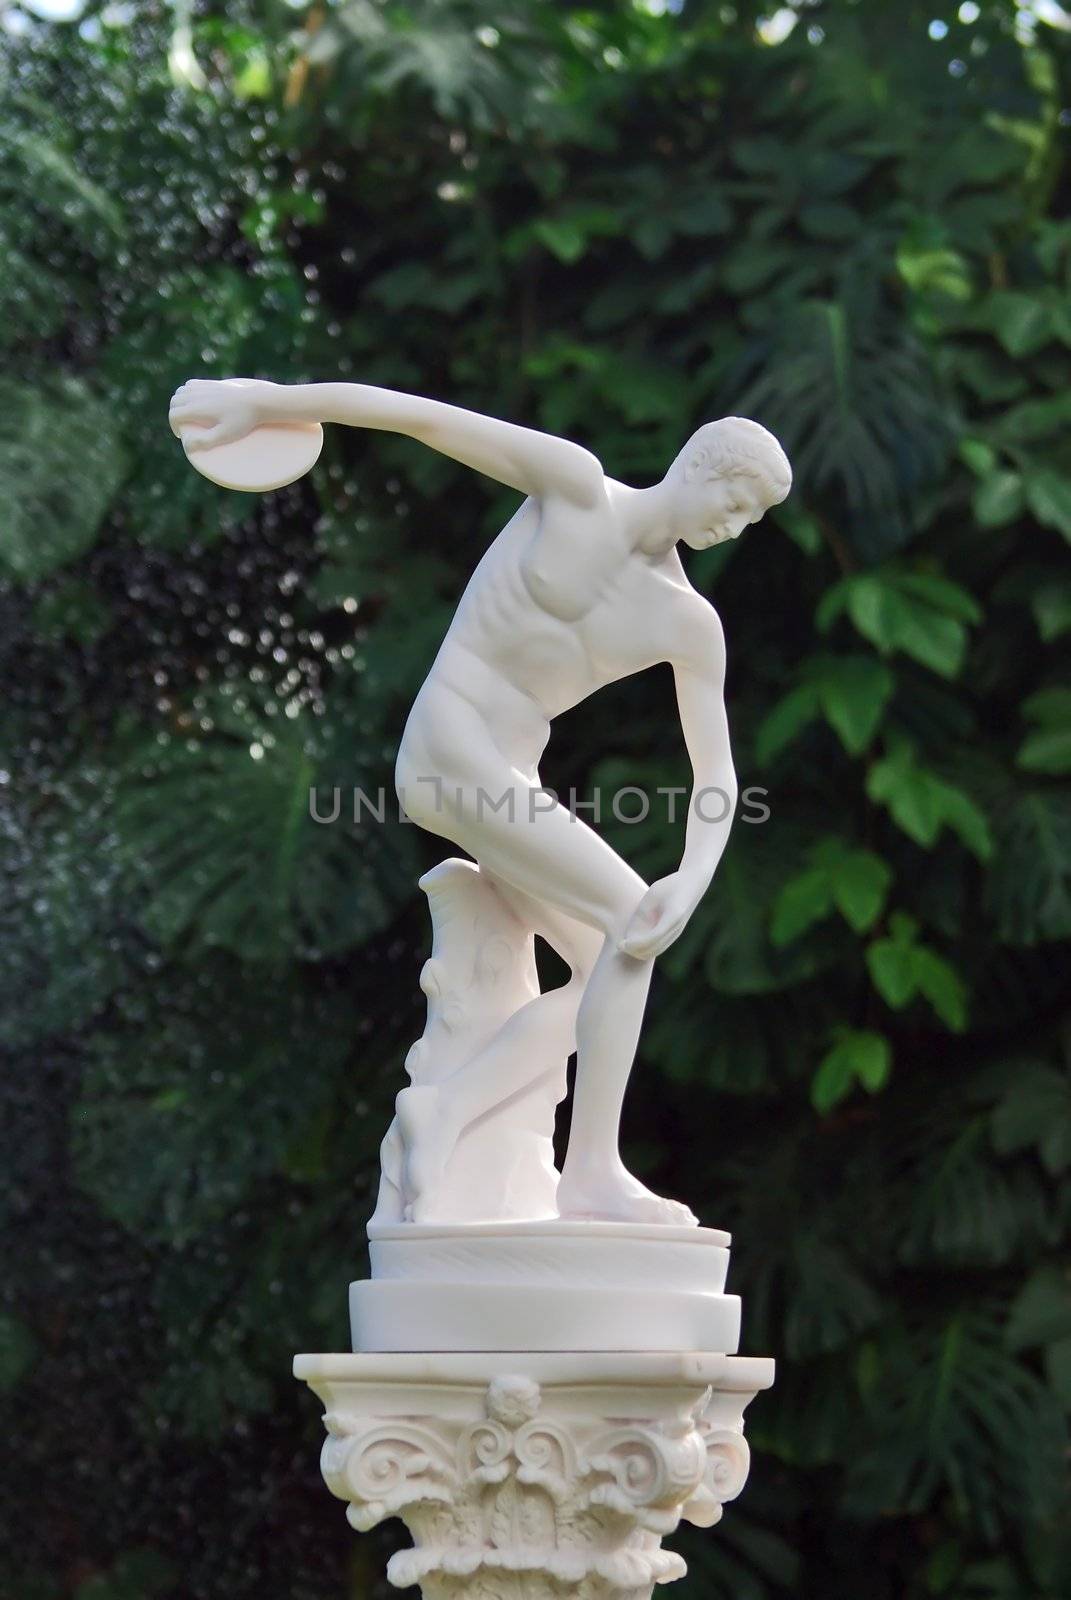 Discobolus sculpture by Vitamin